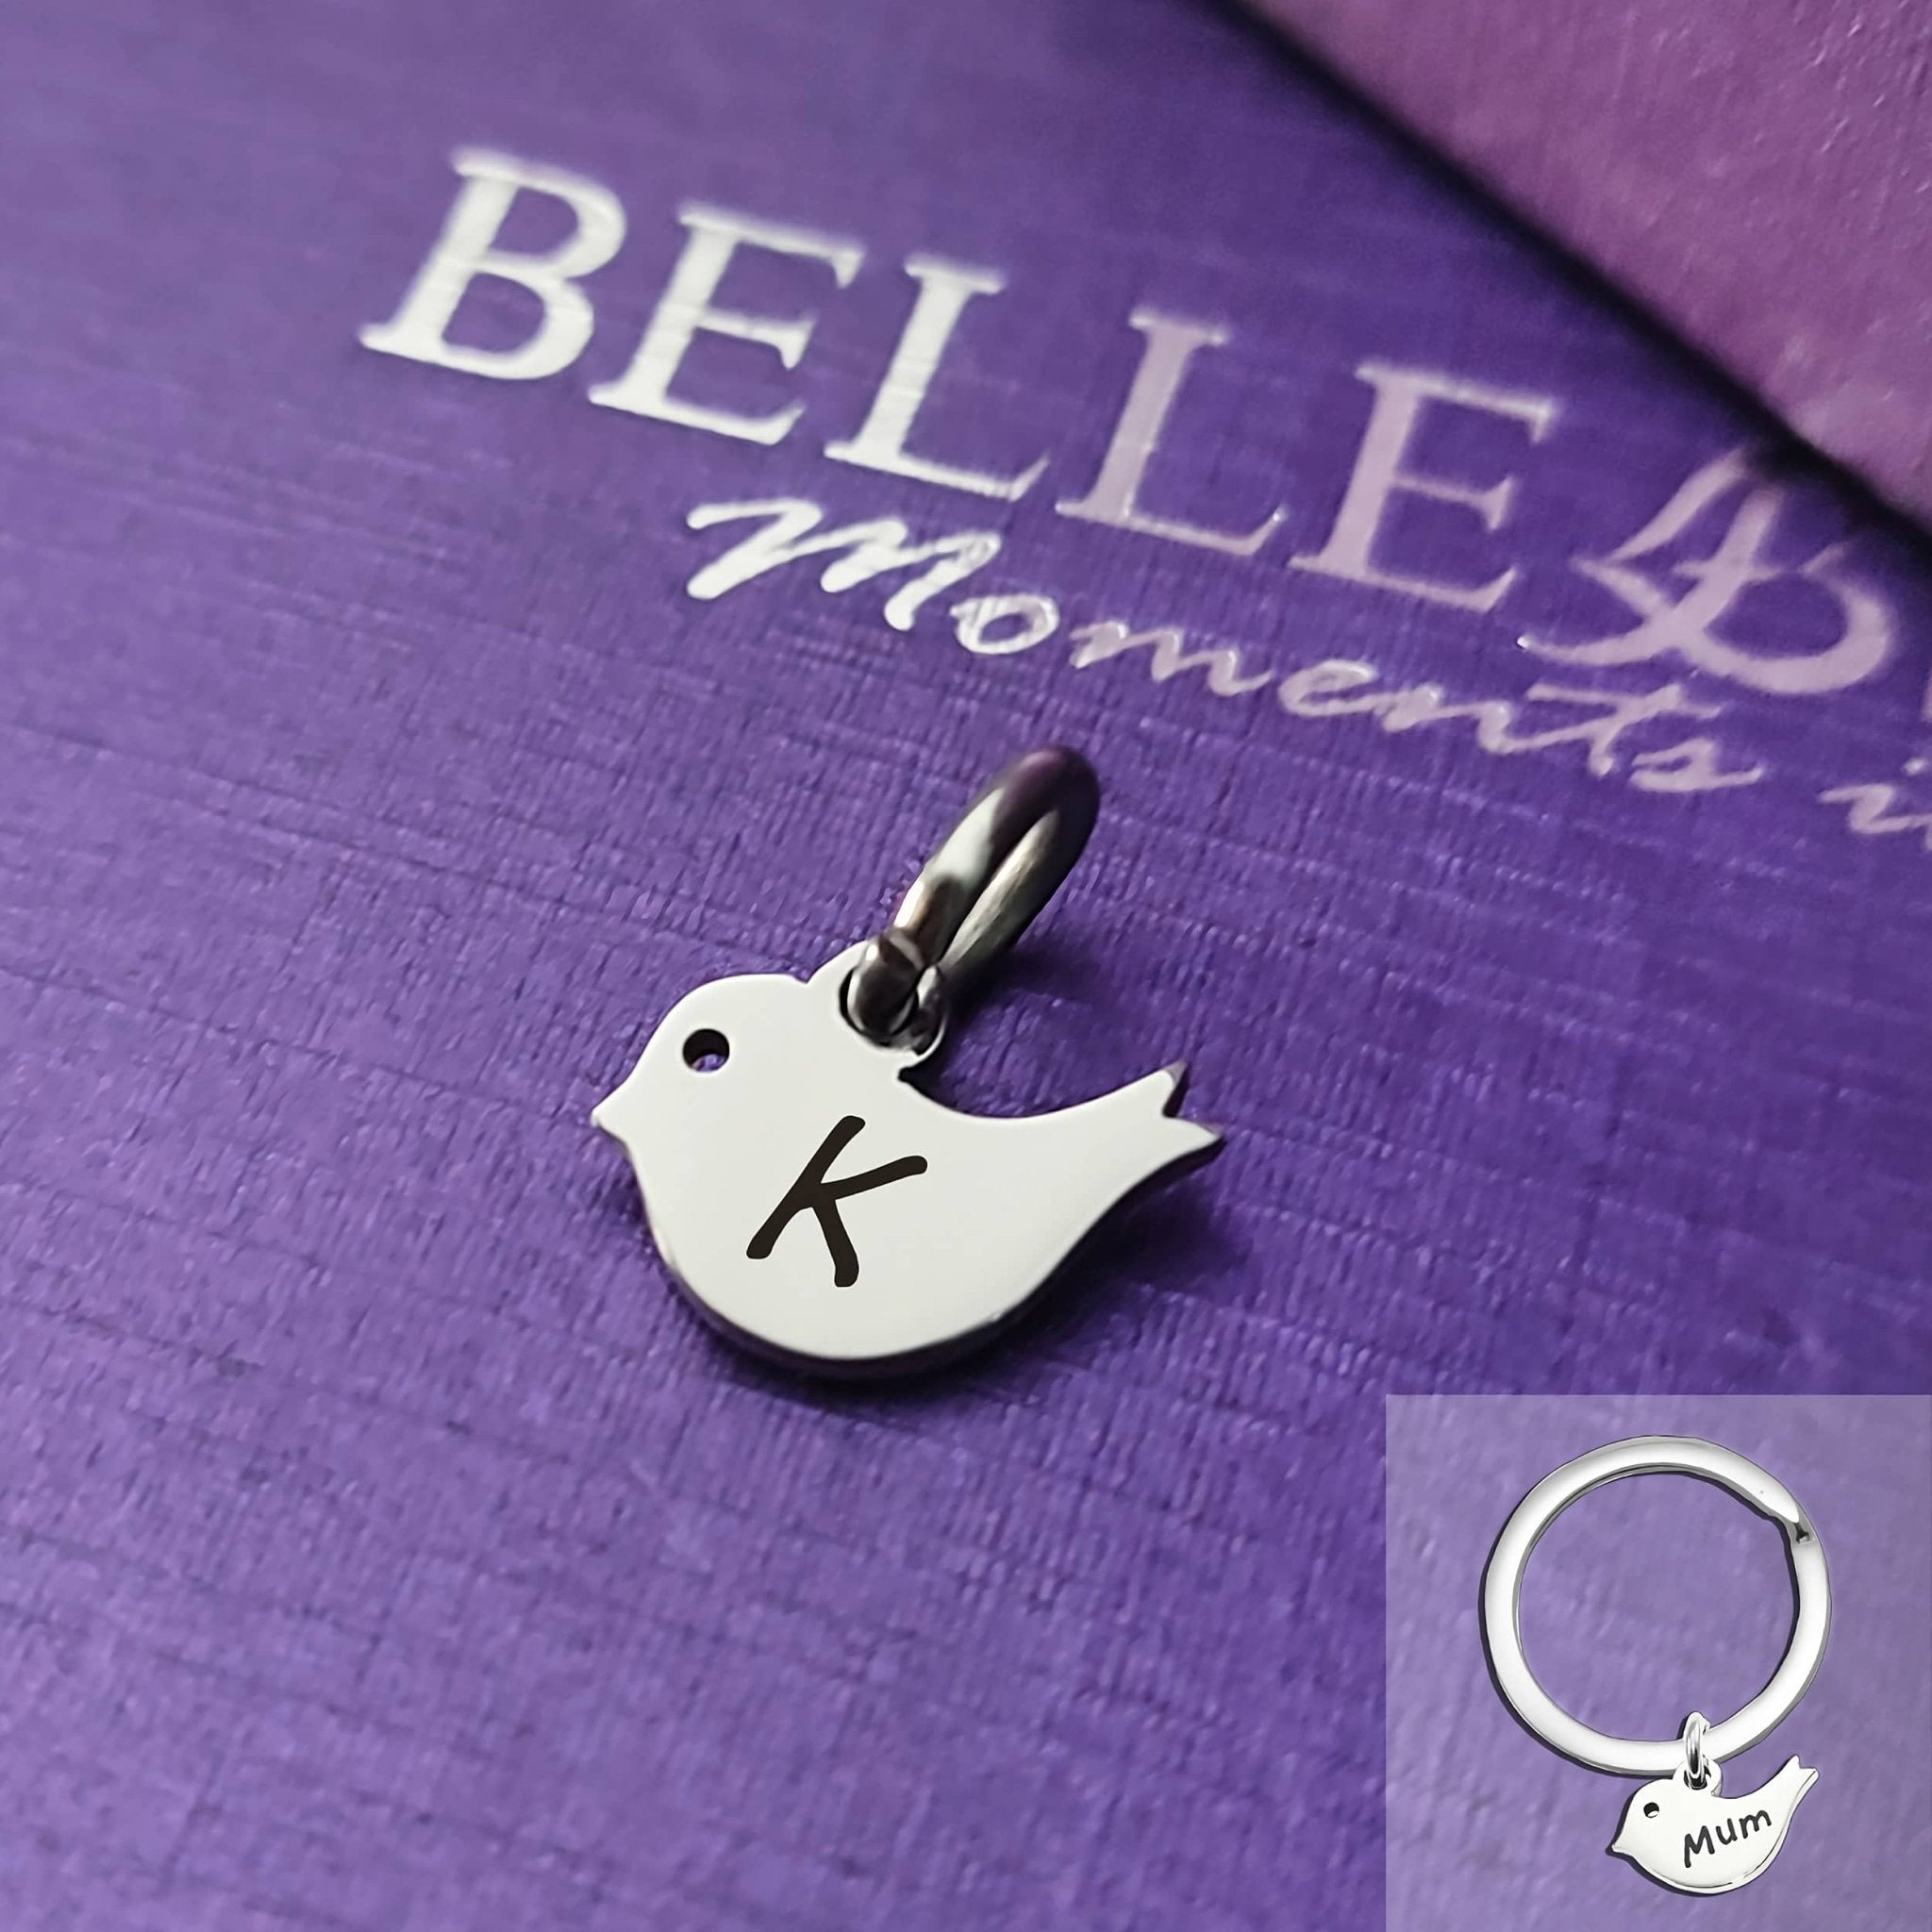 Little Bird Charm for Keyring - Keyrings by Belle Fever